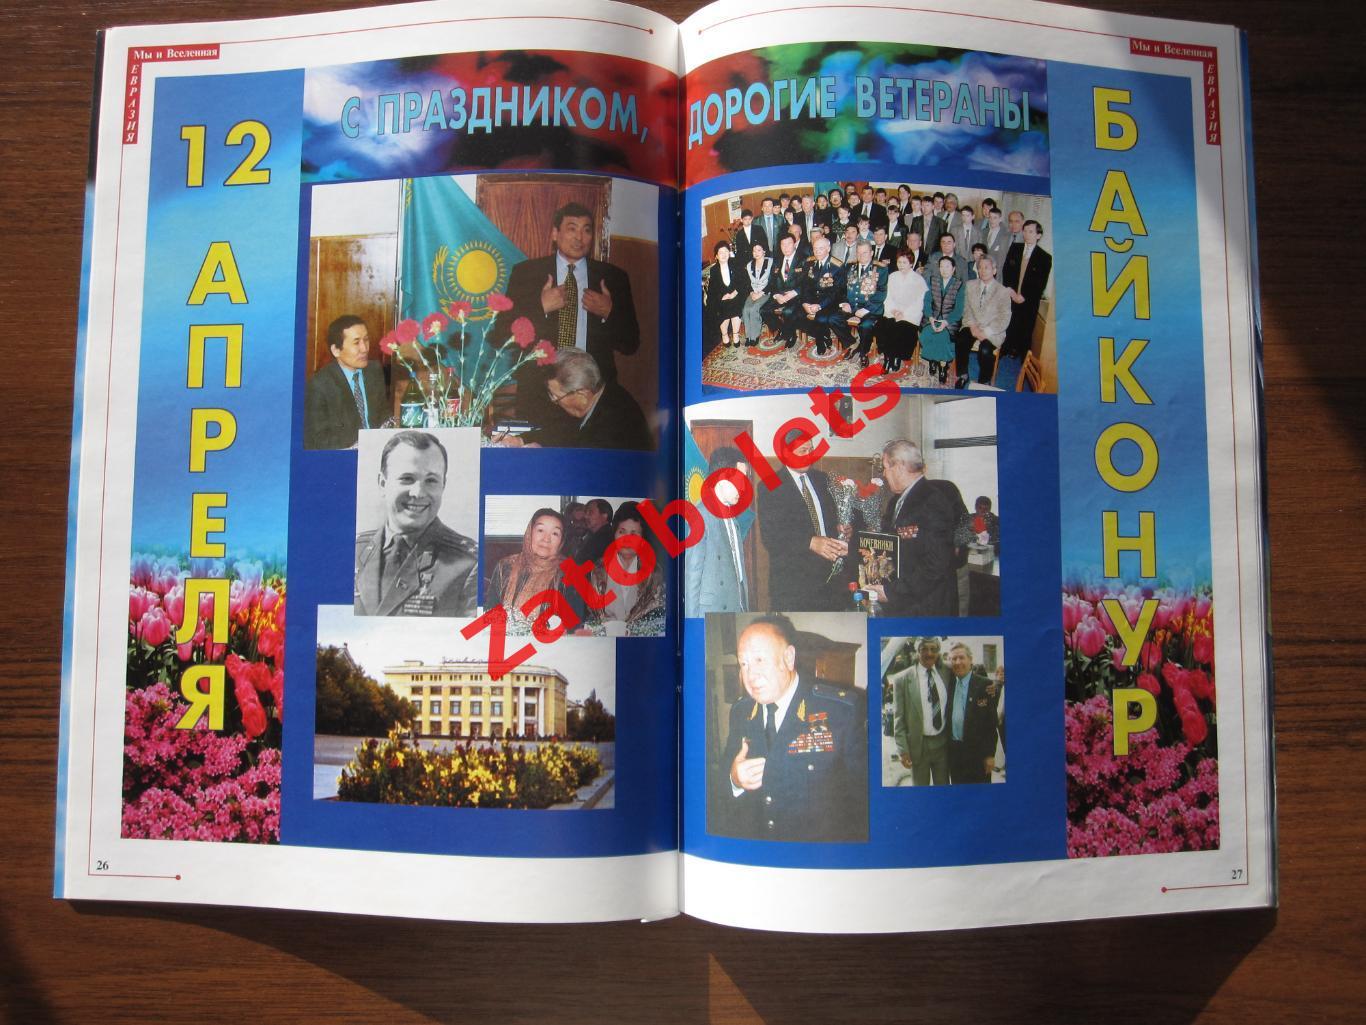 Мы и вселенная №3-2000 год Спецвыпуск Казахстанский космос 1